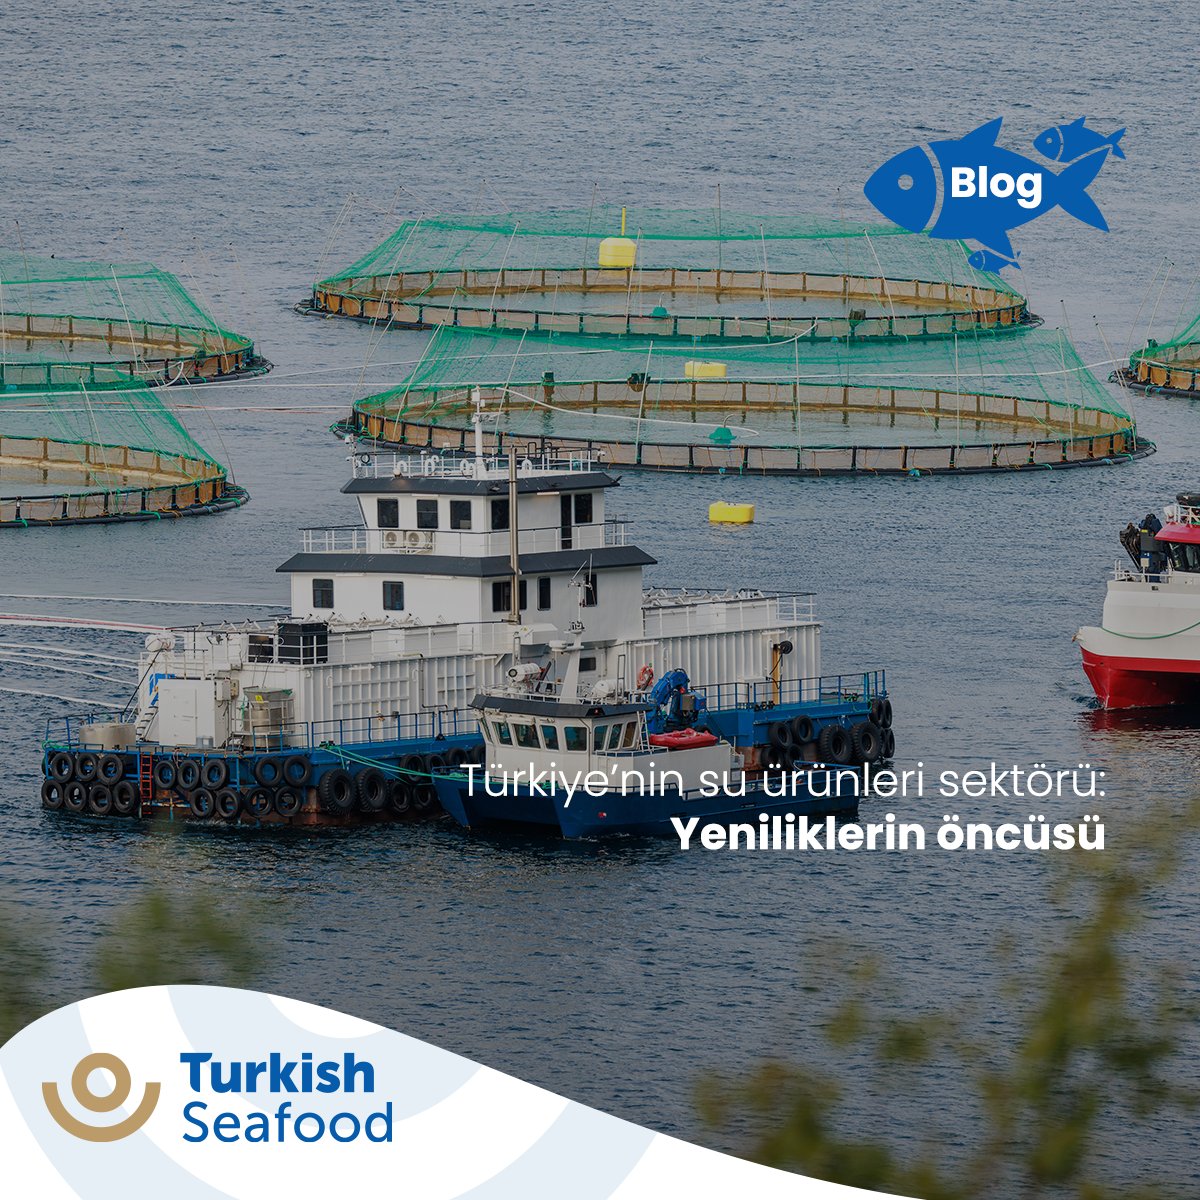 Türkiye’nin su ürünleri sektöründe izlediği sürdürülebilir adımlara değindik.

Aşağıdaki linkten ziyaret edebilirsiniz. ⬇️

We touched upon Türkiye's sustainable steps in the aquaculture sector.

You can visit from the link below. ⬇️

bit.ly/3U7XtoC